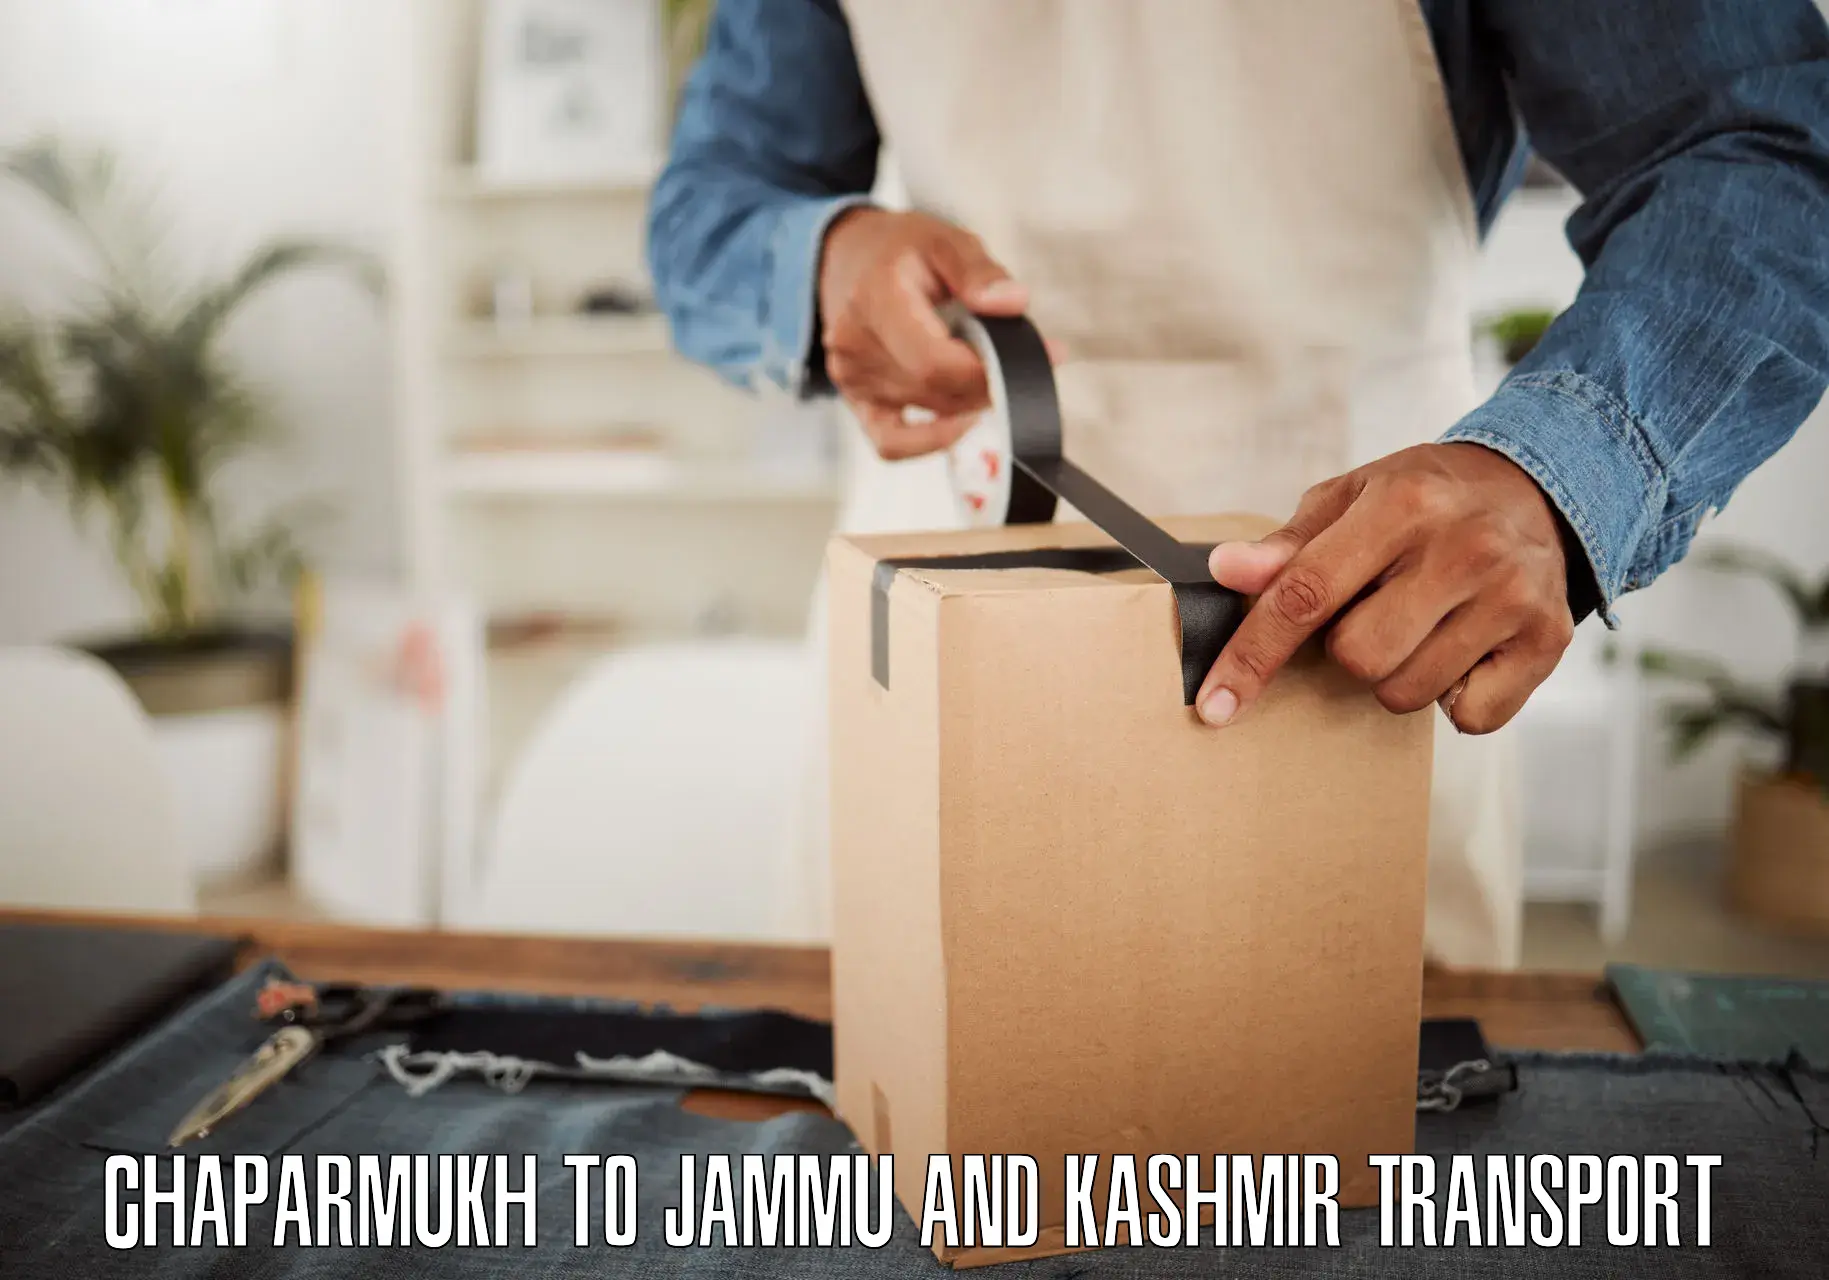 Furniture transport service Chaparmukh to Srinagar Kashmir